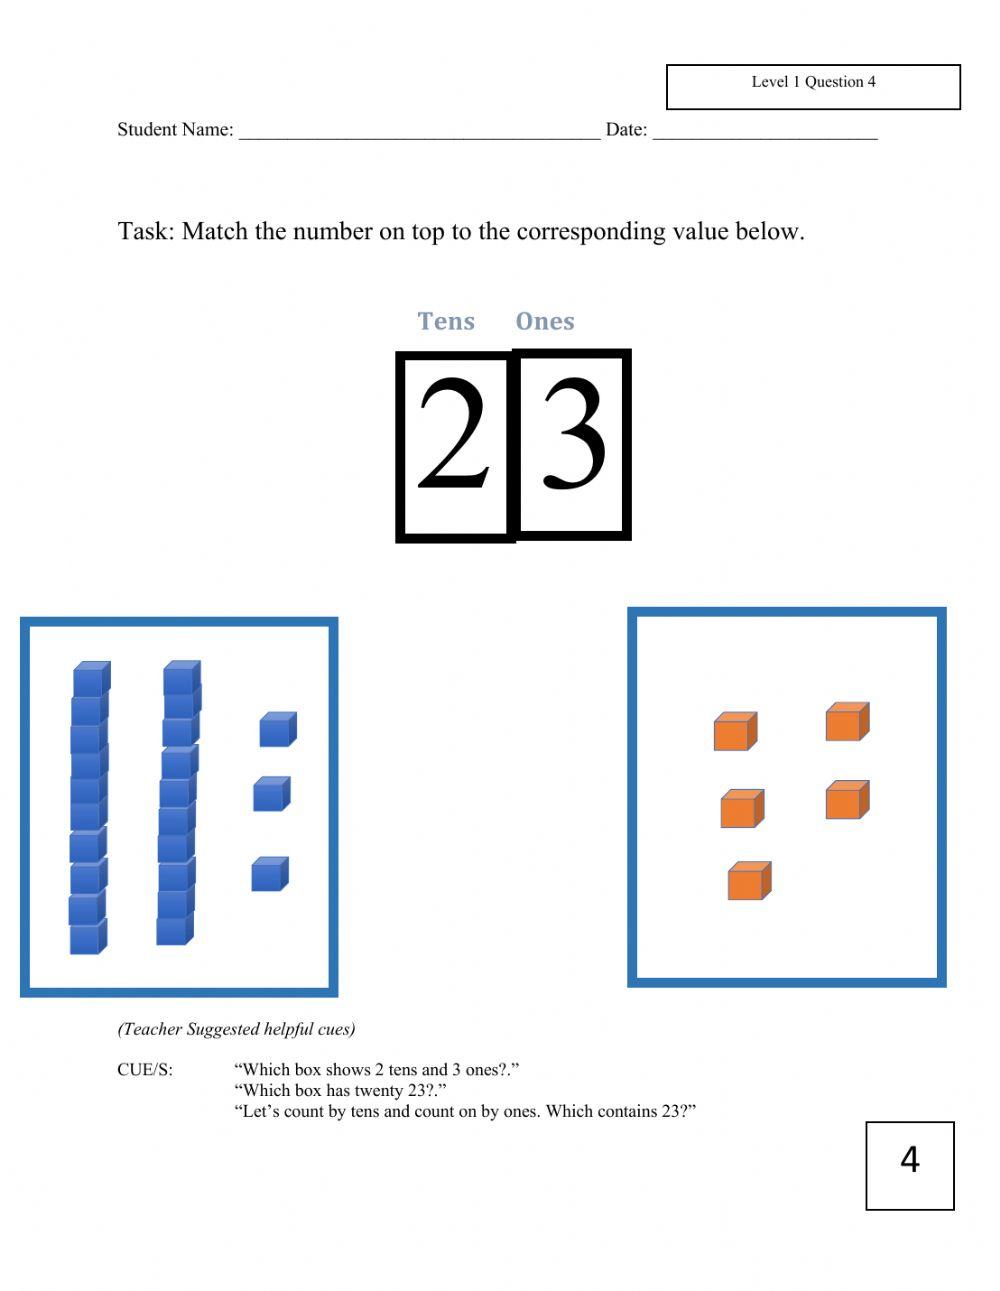 Level 1 November Math assessment k-2